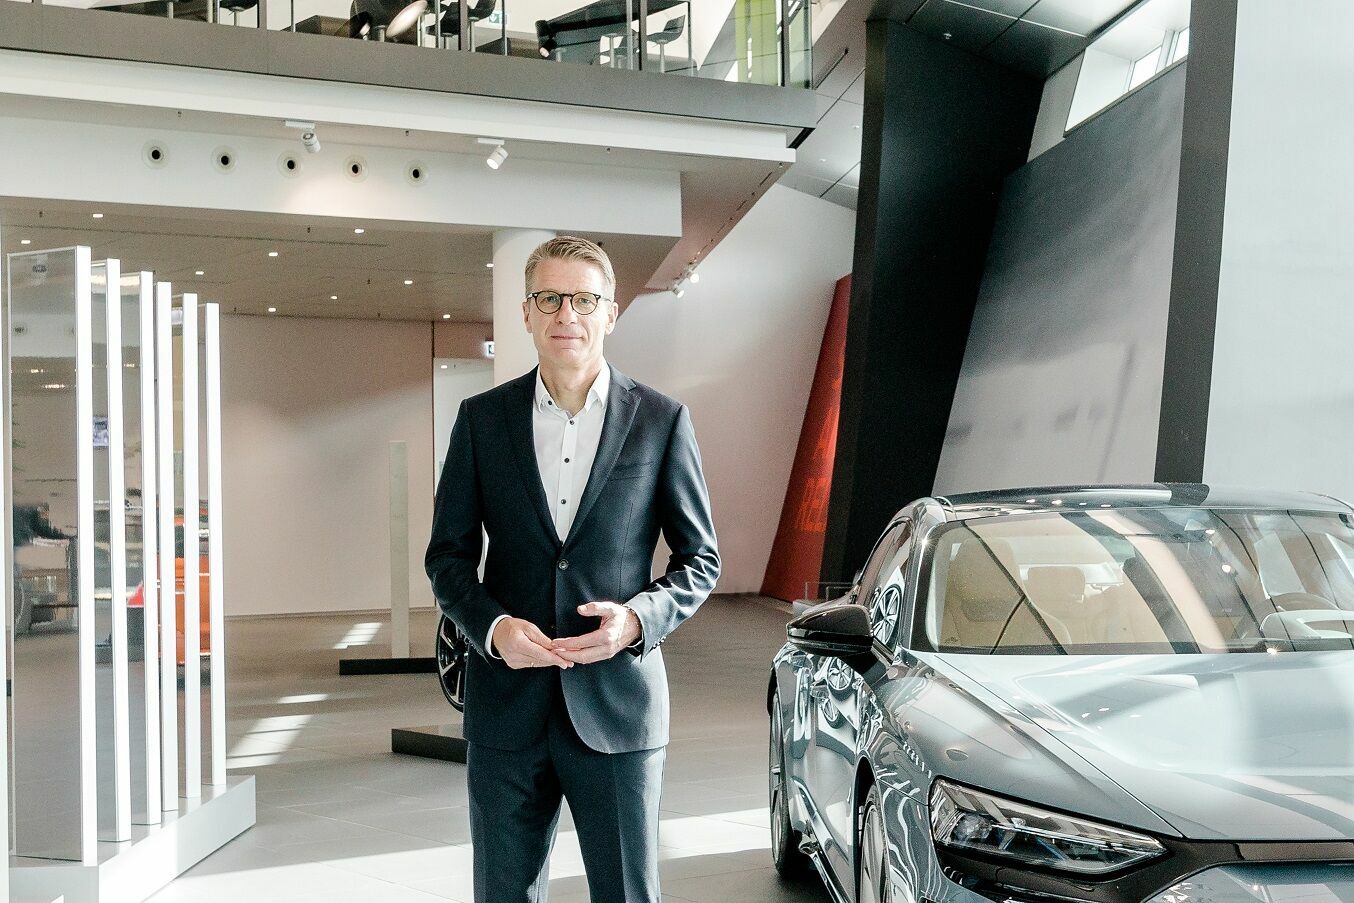 Mission:Zero am Standort Neckarsulm: Audi gestaltet die Zukunft der Produktion konsequent nachhaltig